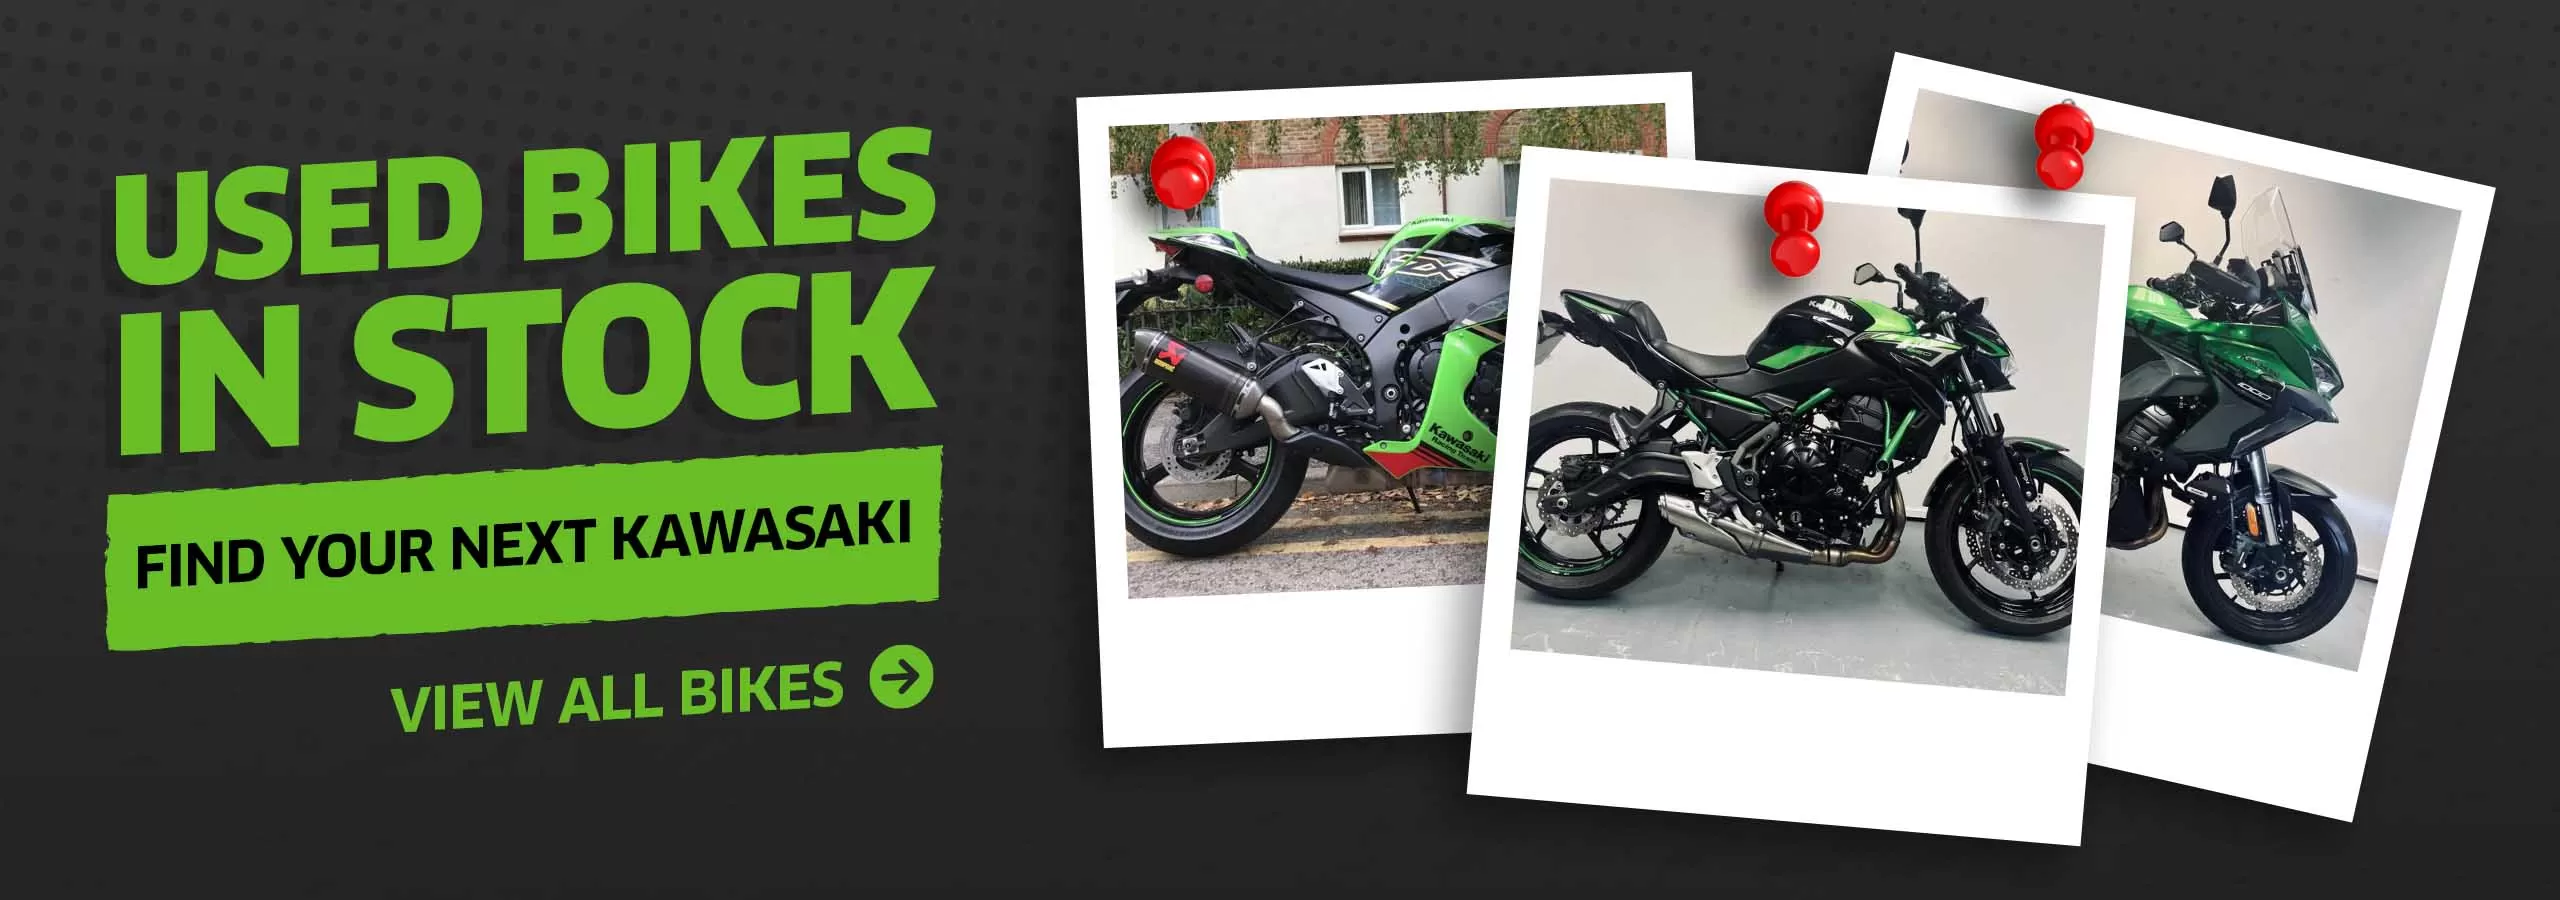 Kawasaki Used Bikes in stock at Laguna Motorcycles